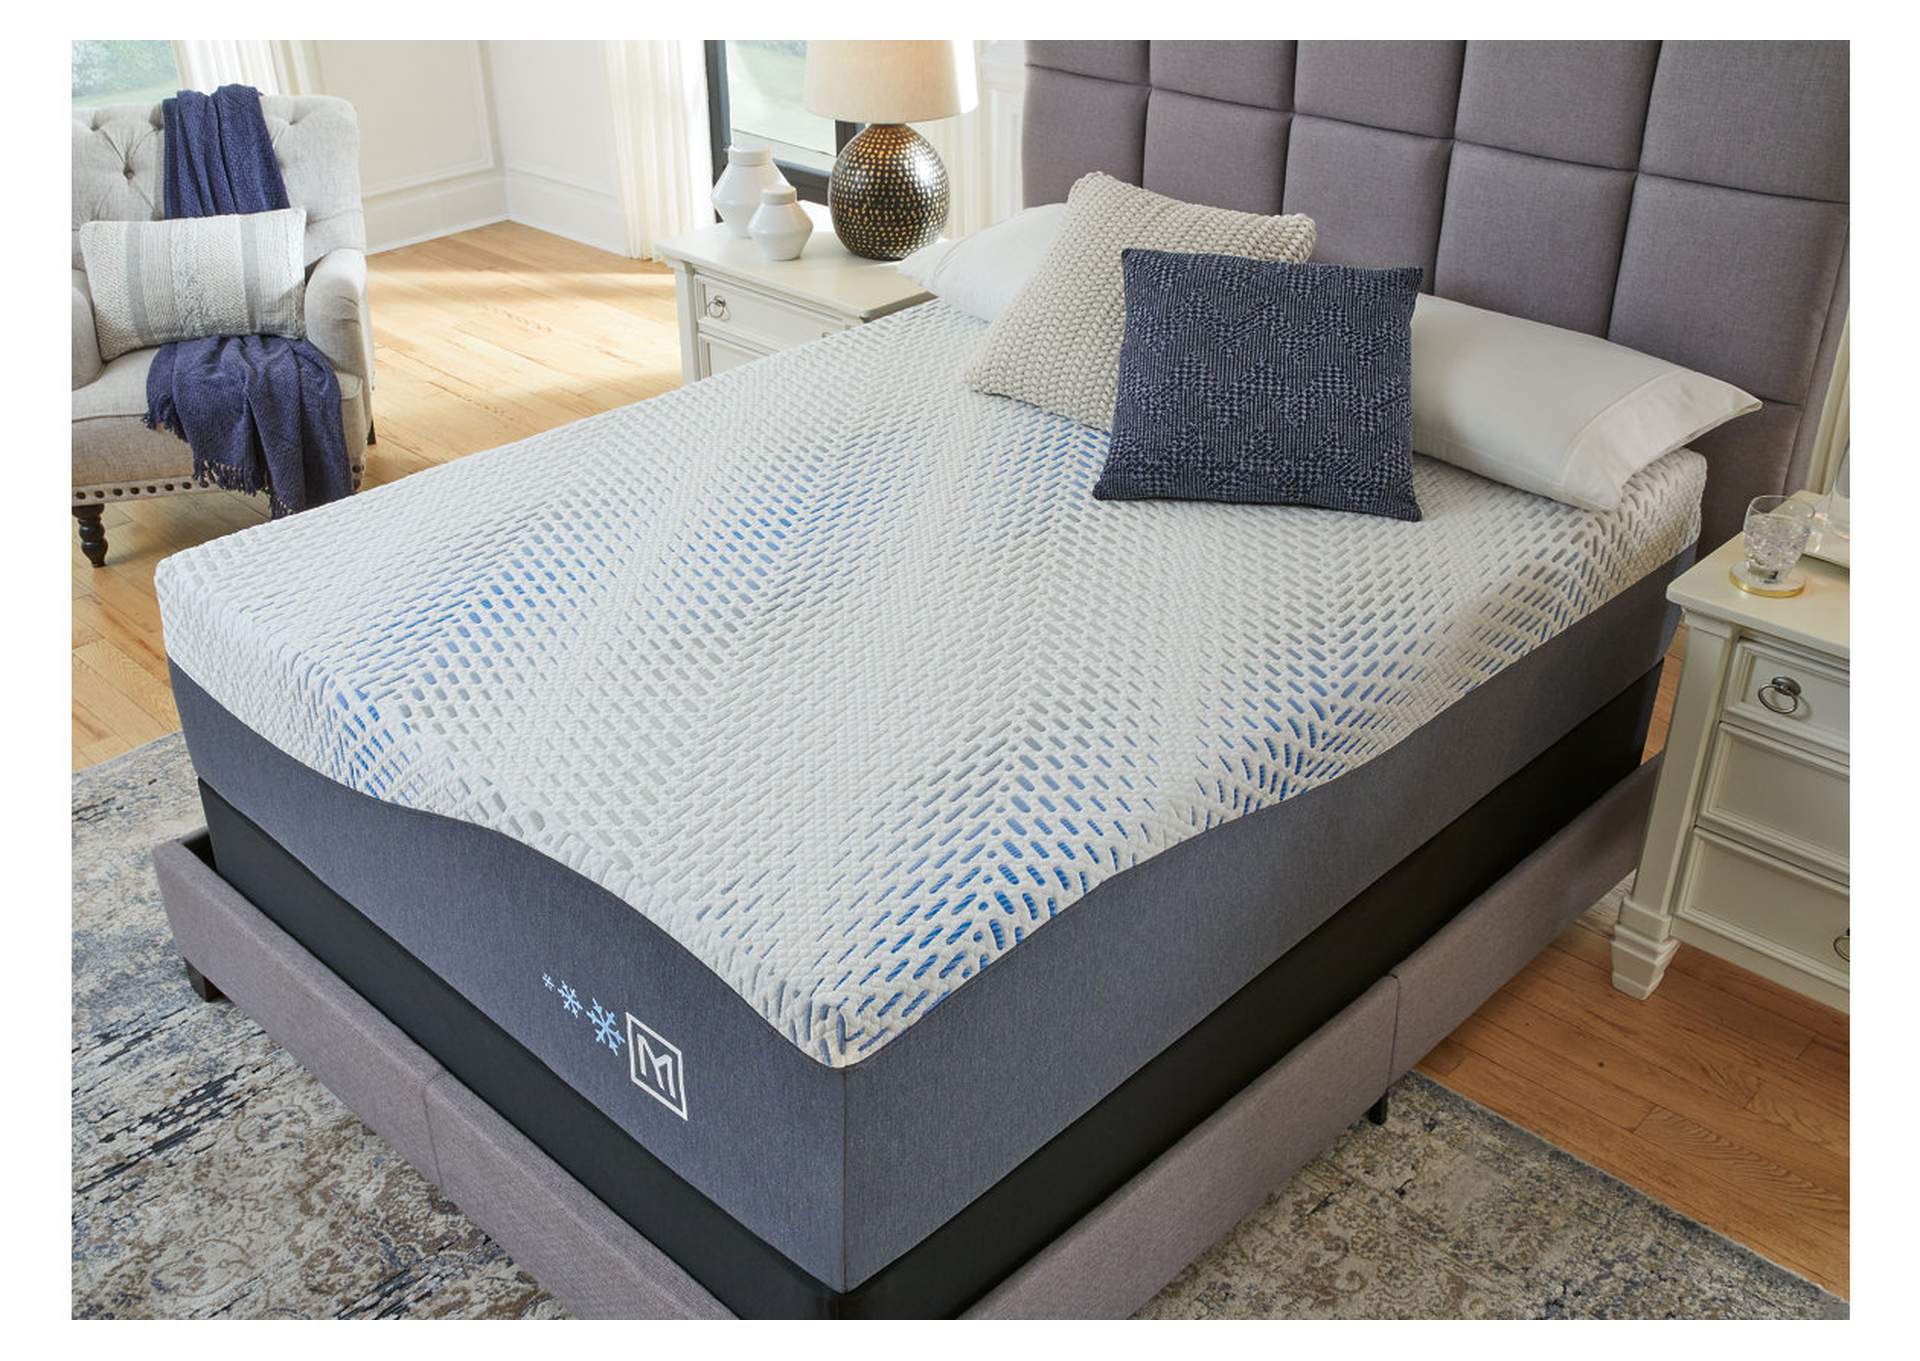 Millennium Cushion Firm Gel Memory Foam Hybrid King Mattress,Sierra Sleep by Ashley